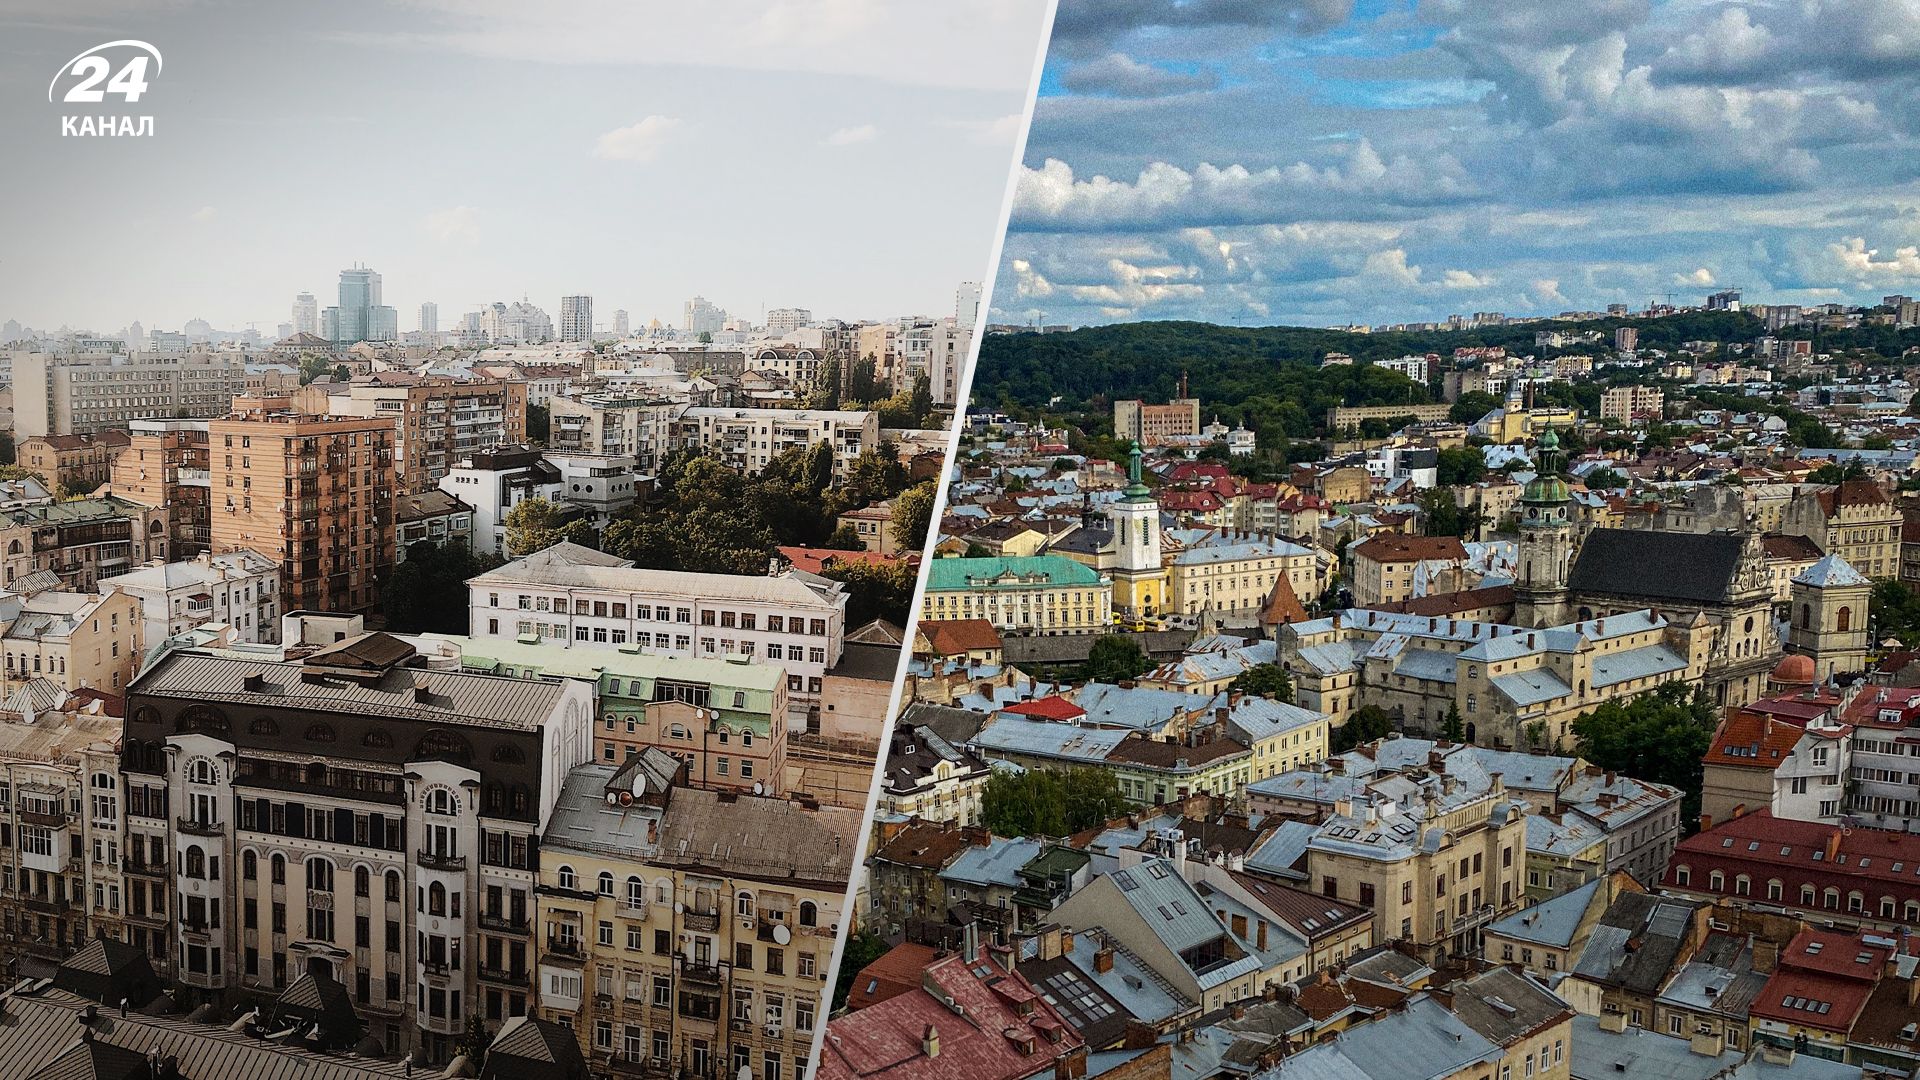 Оренда 1-кімнатної квартири у Львові на 50% дорожча, ніж в Києві